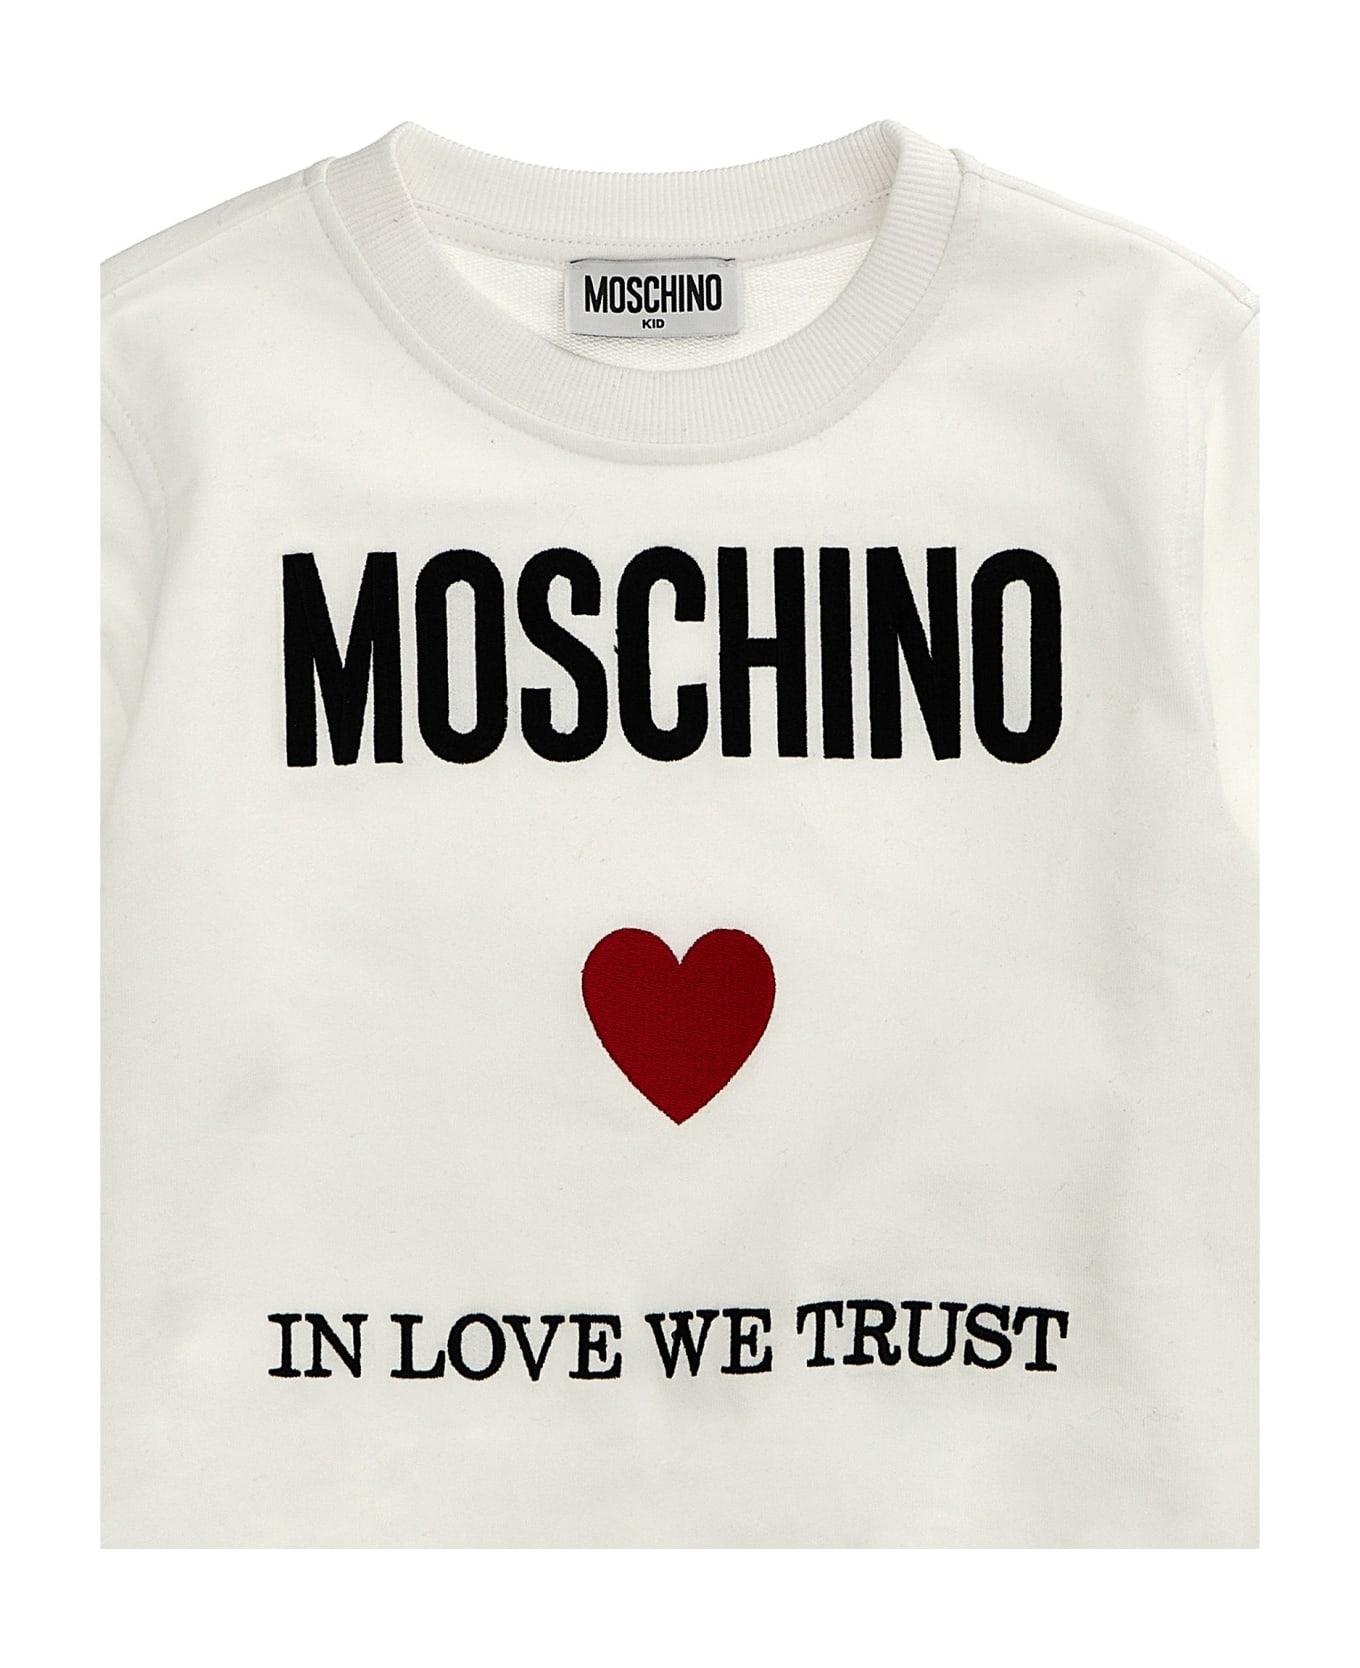 Moschino 'in Love We Trust' Sweatshirt - White ニットウェア＆スウェットシャツ